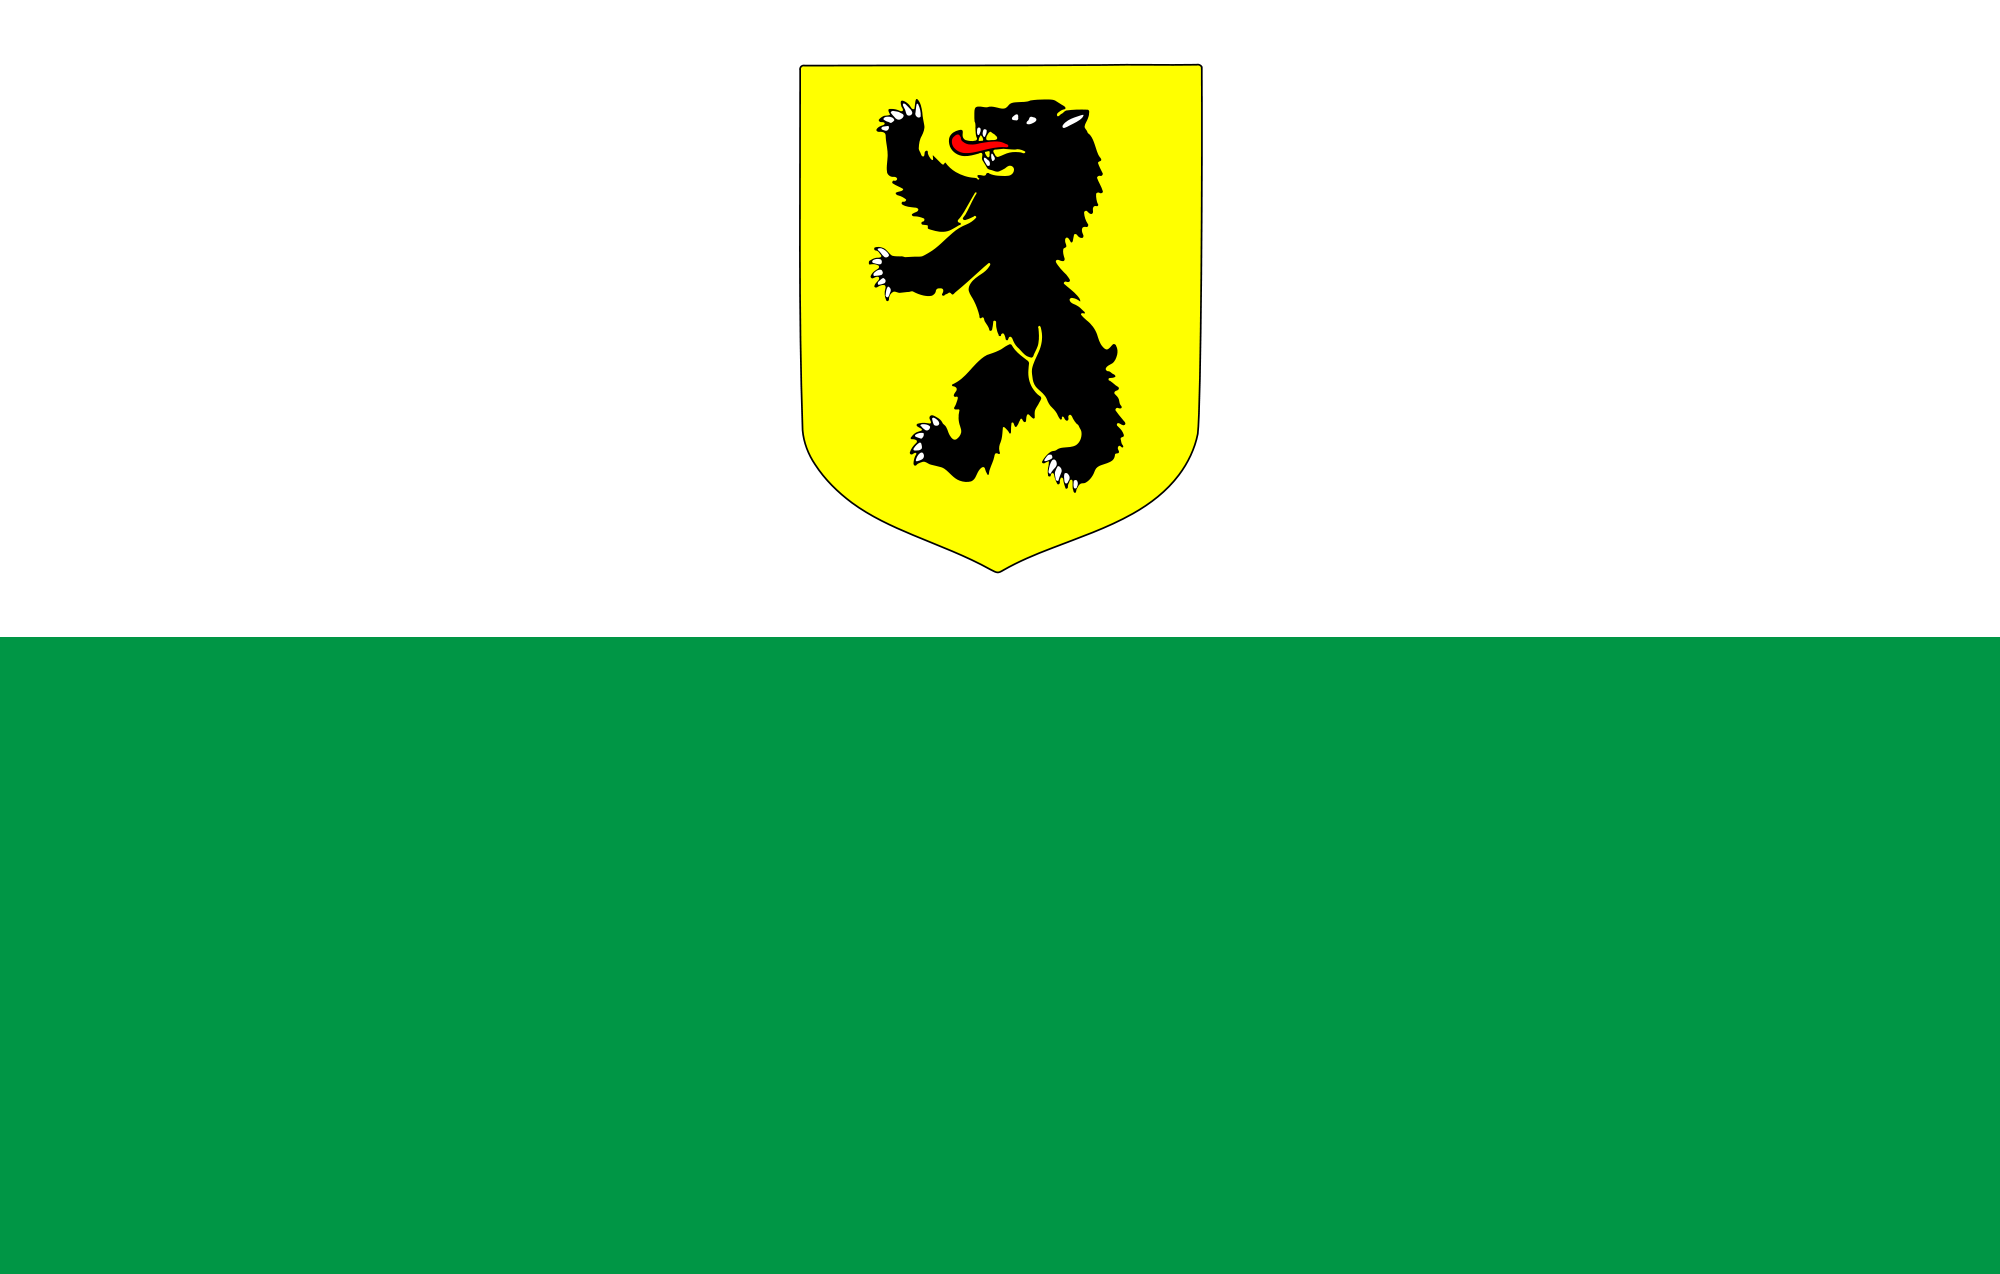 Pärnu County (Parnumaa)